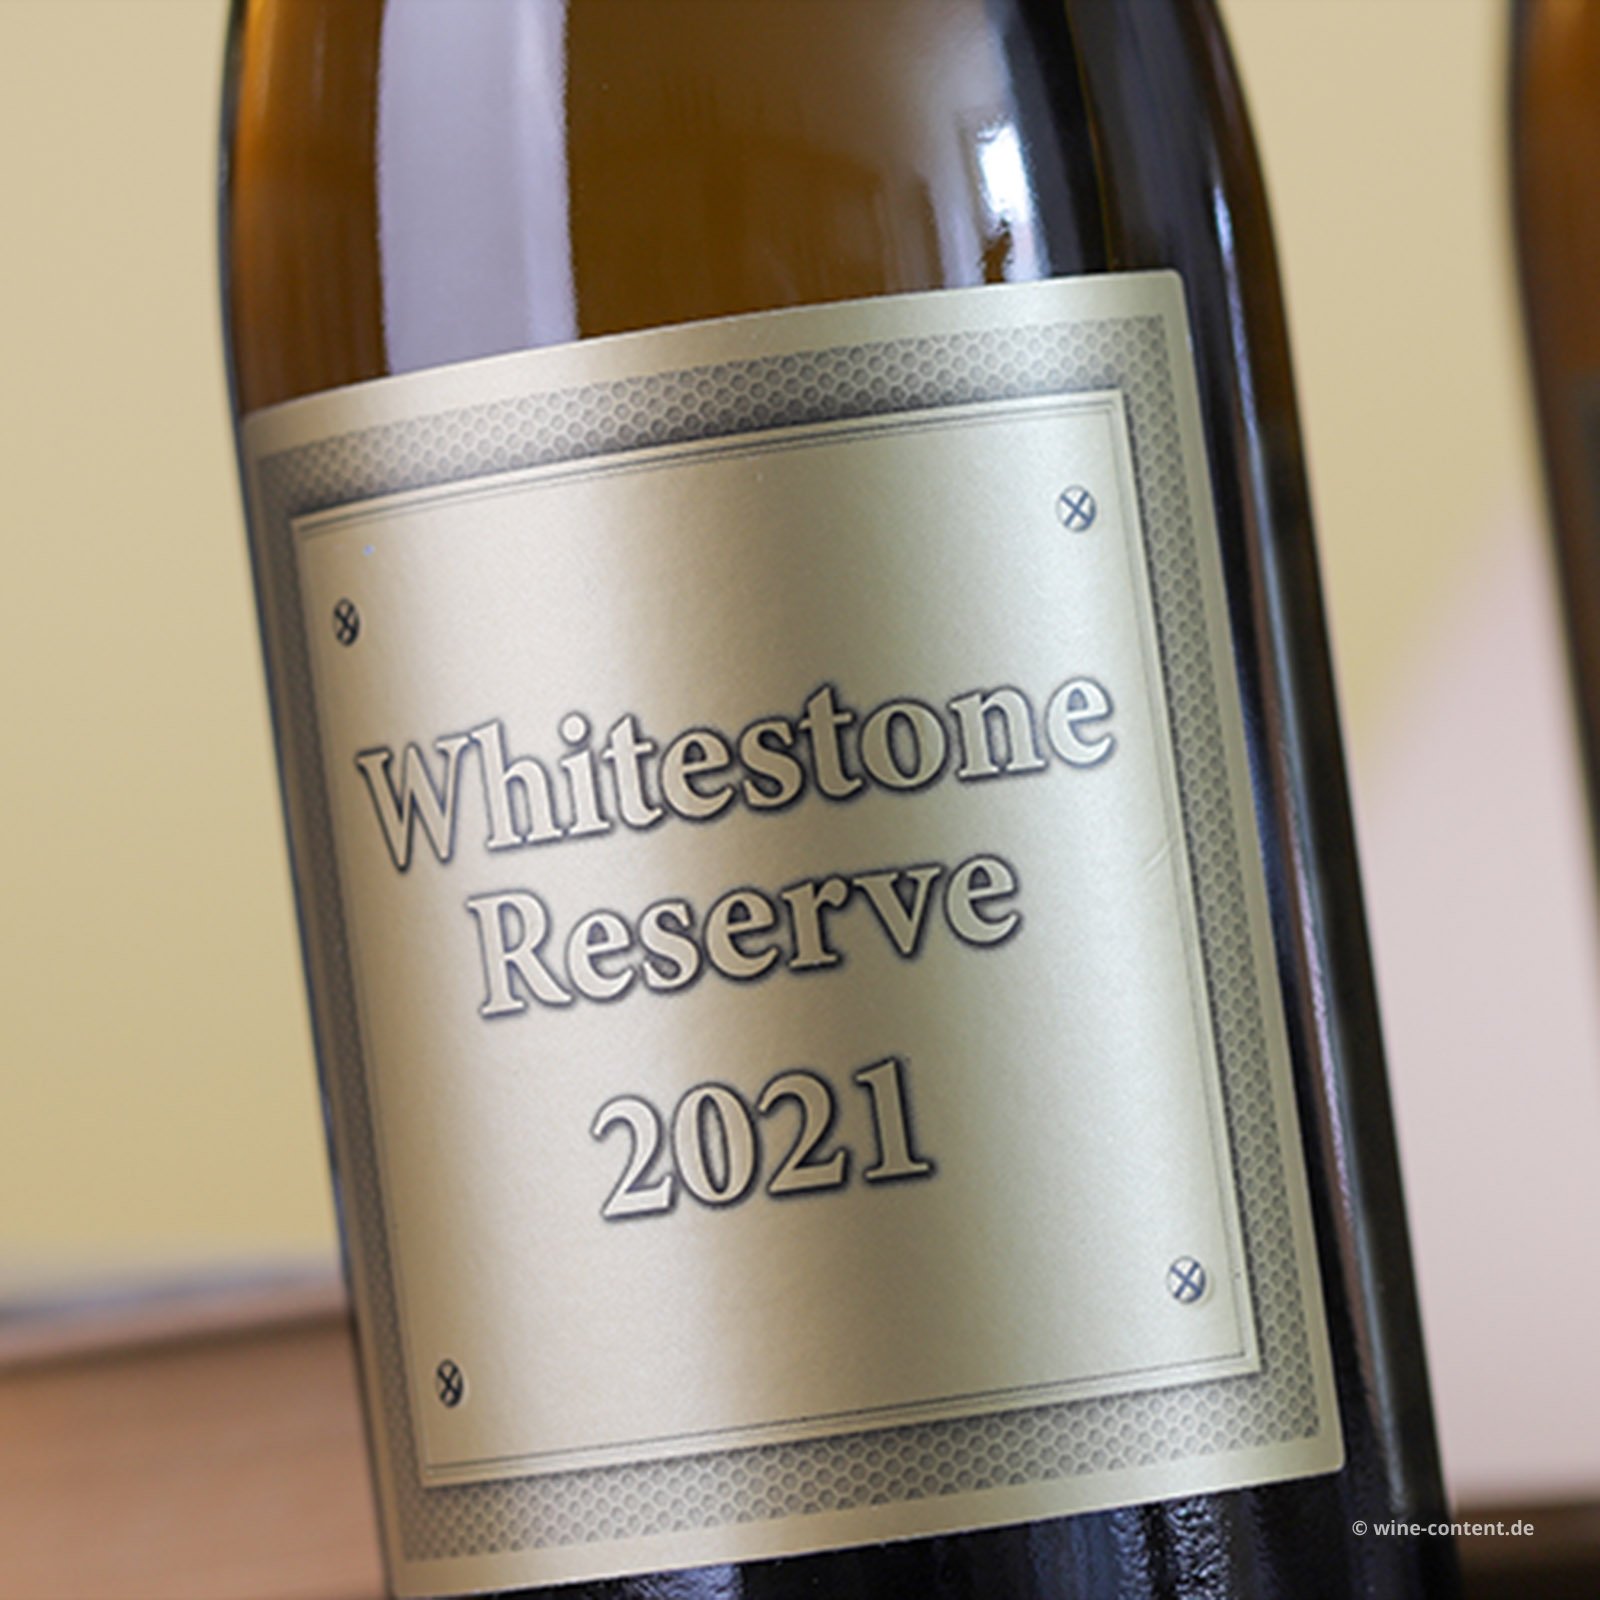 Whitestone Reserve 2021